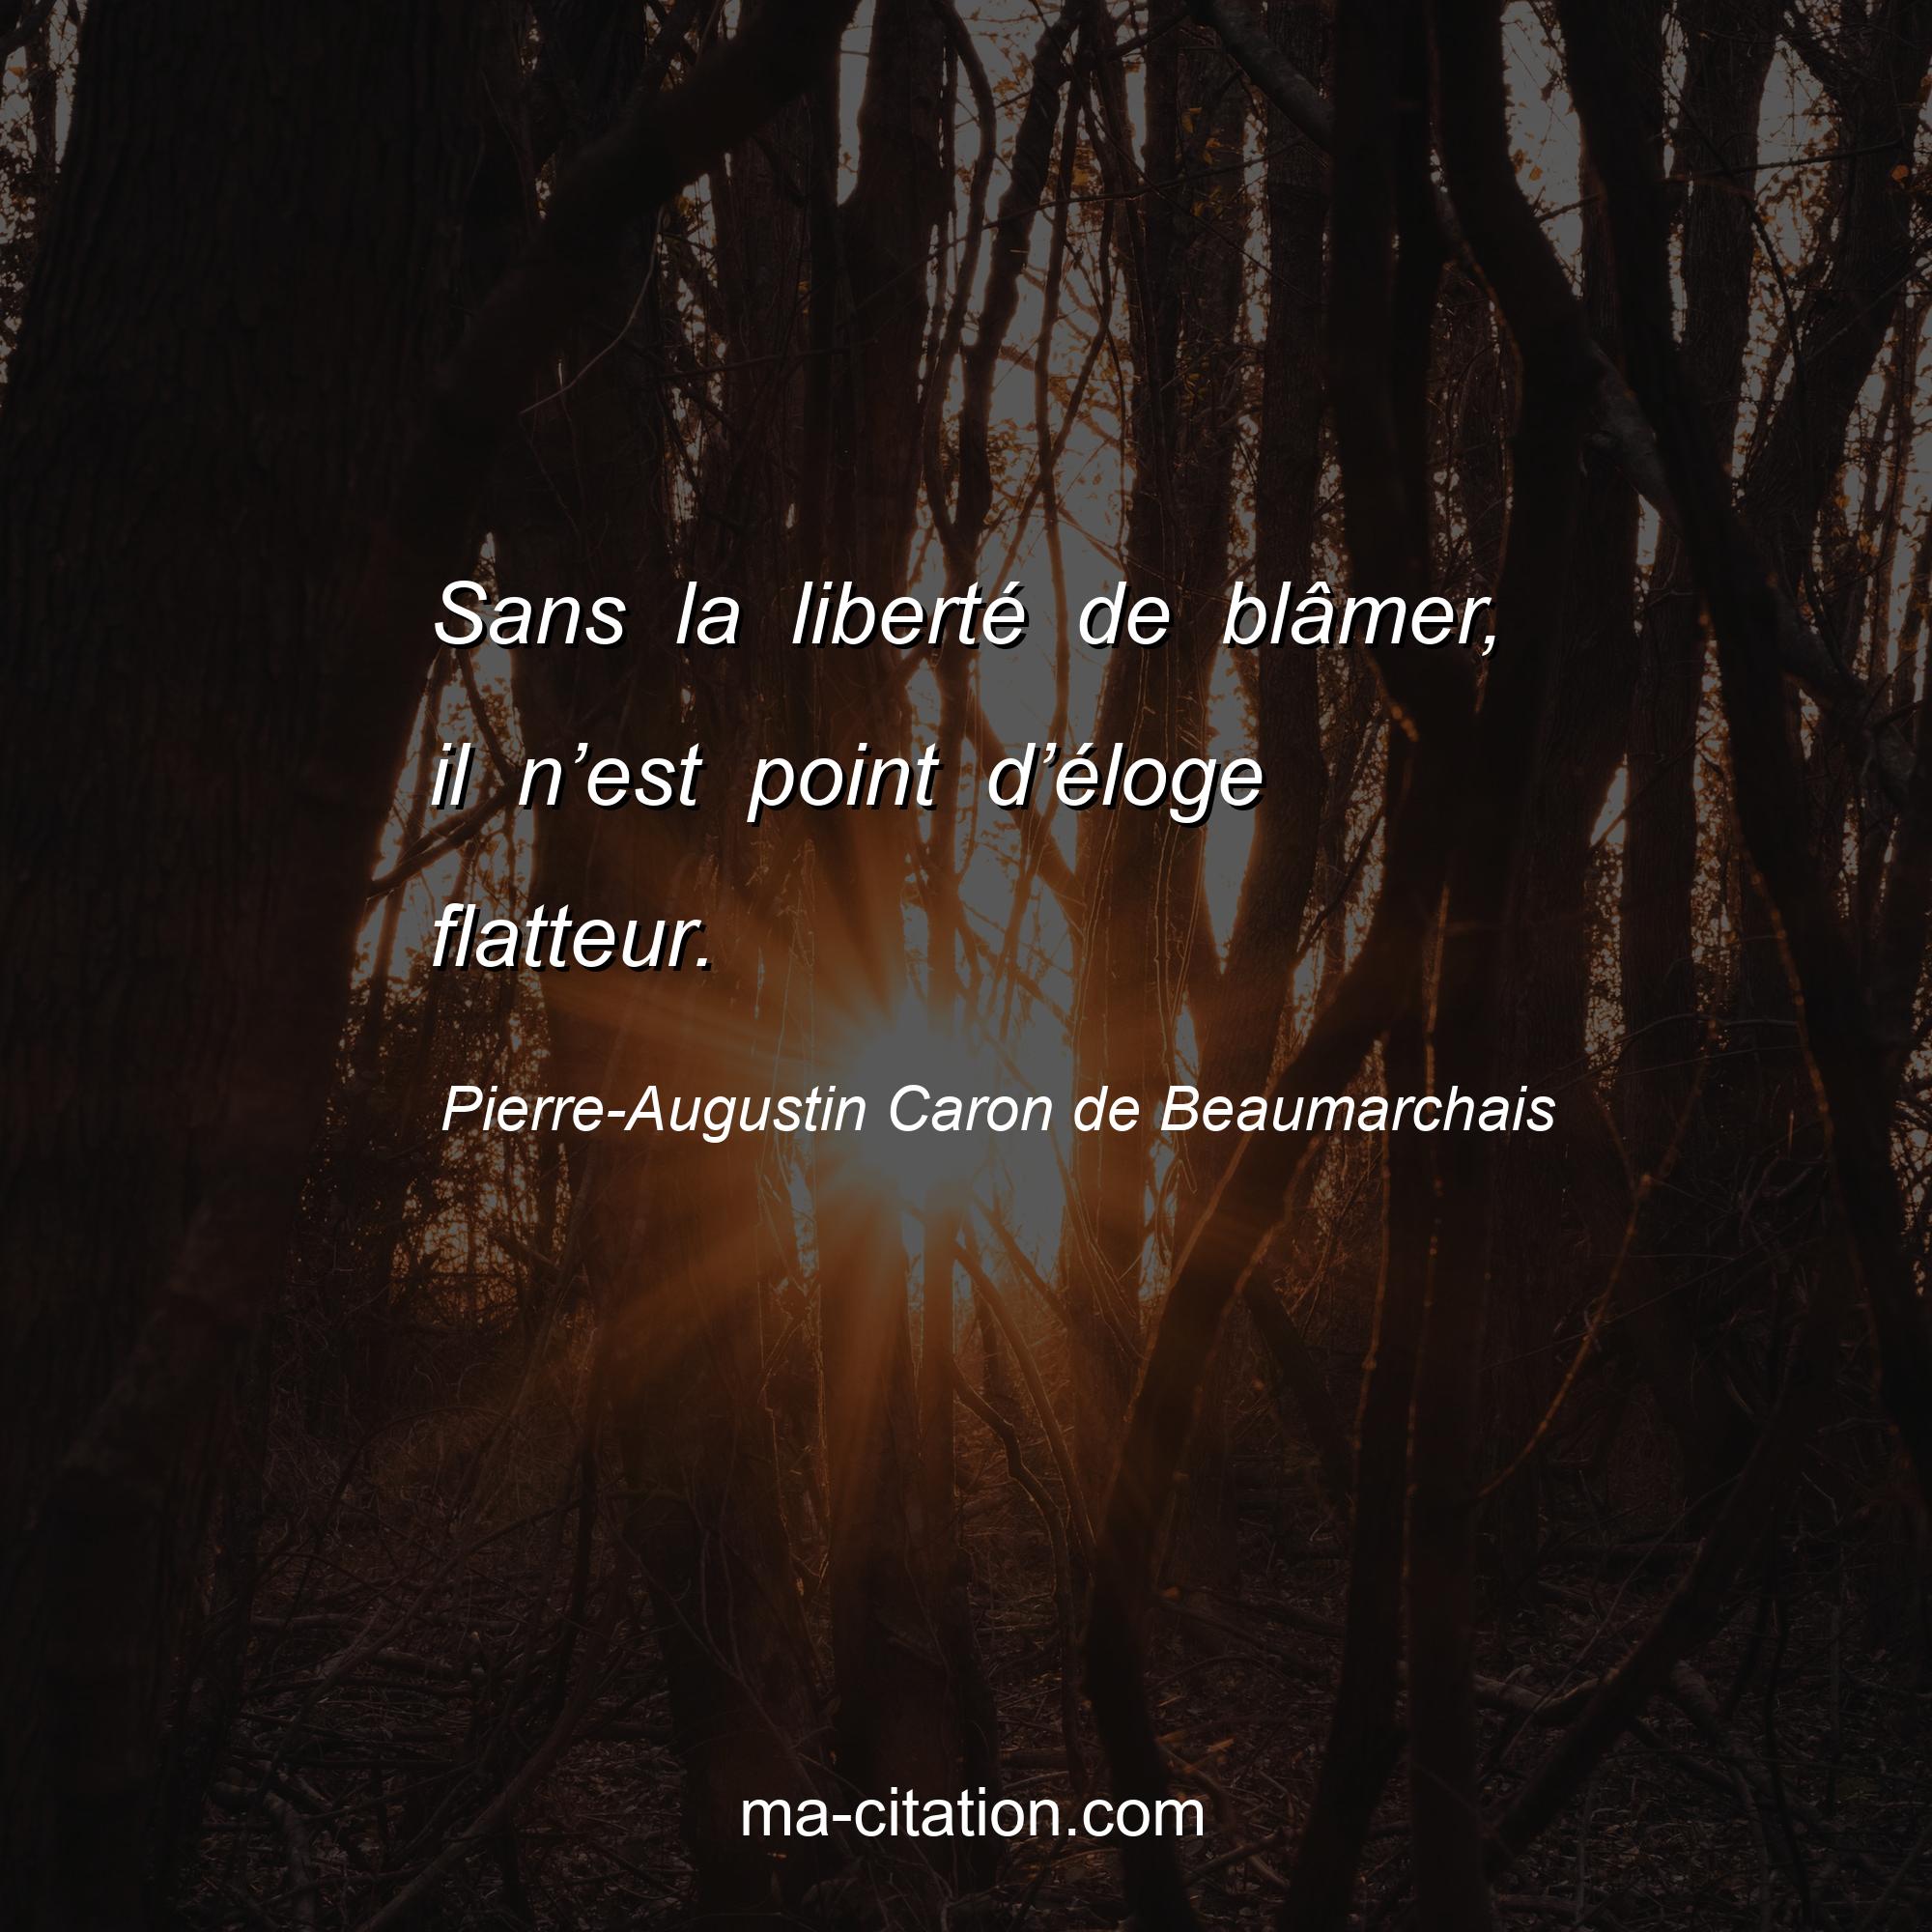 Pierre-Augustin Caron de Beaumarchais : Sans la liberté de blâmer, il n’est point d’éloge flatteur.